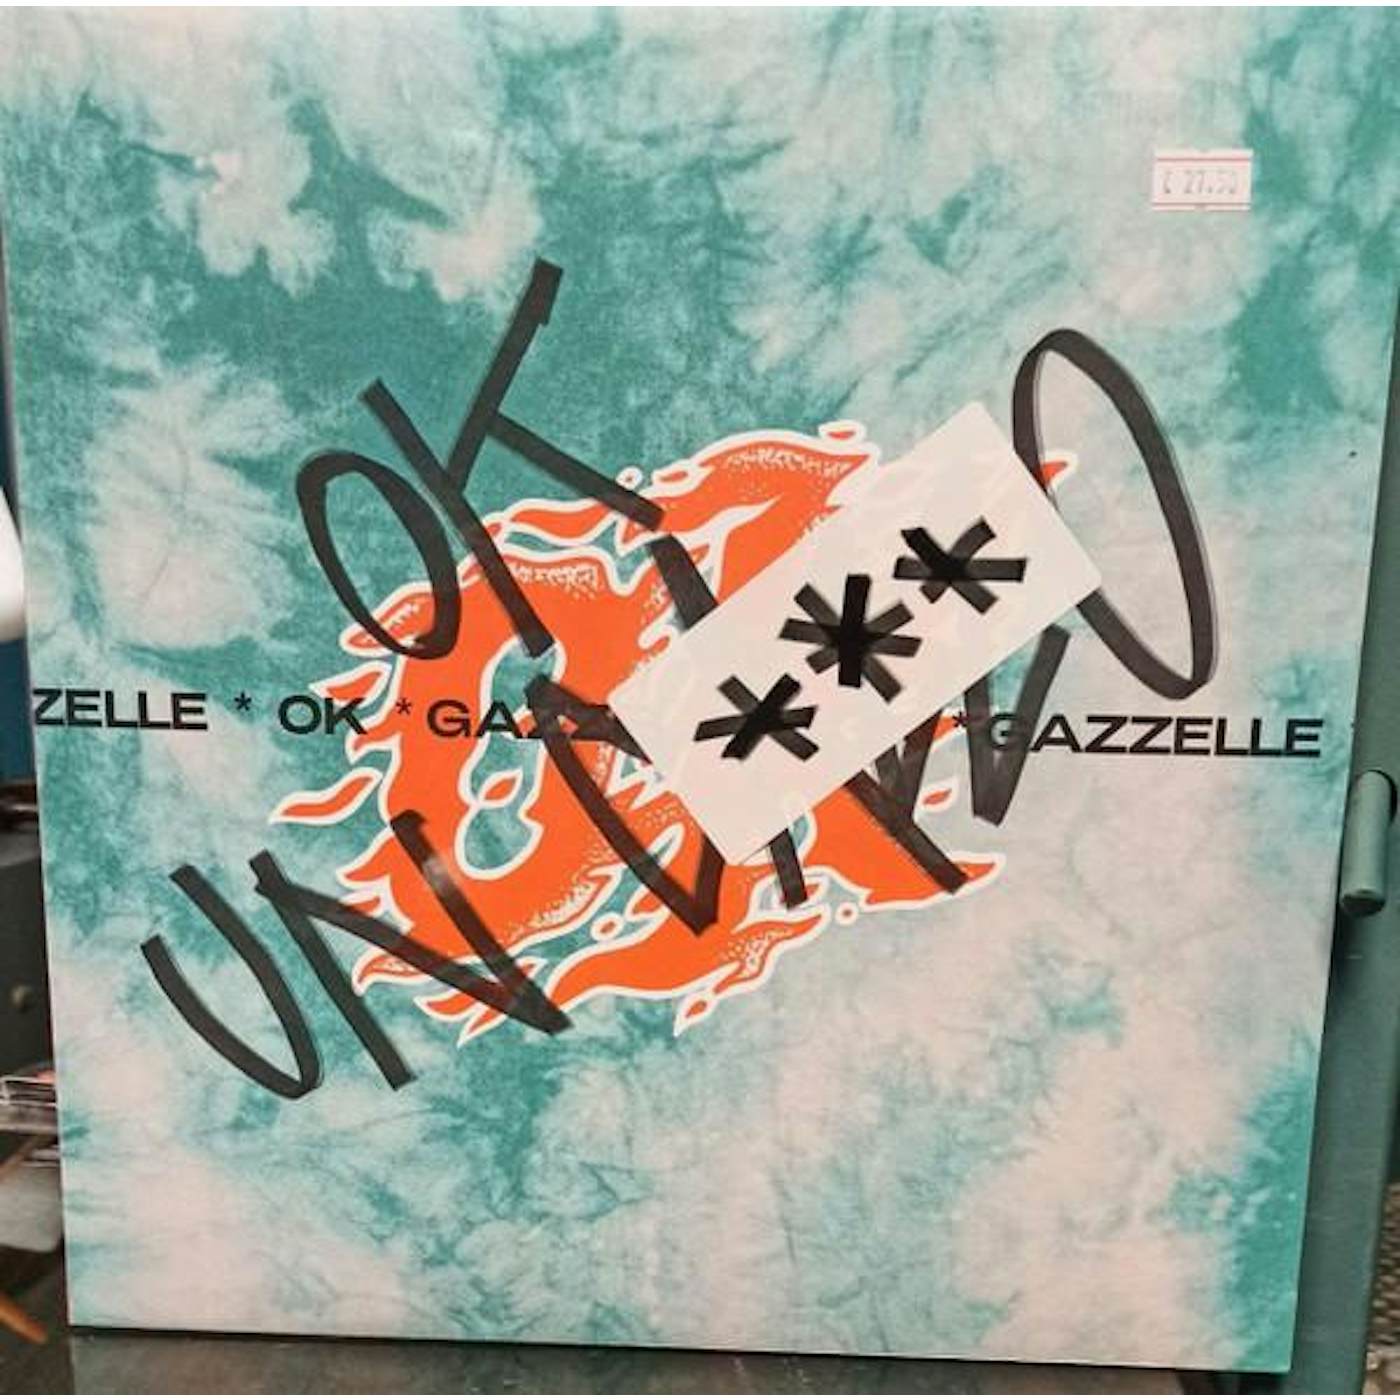 Gazzelle OK UN CAZZO CD